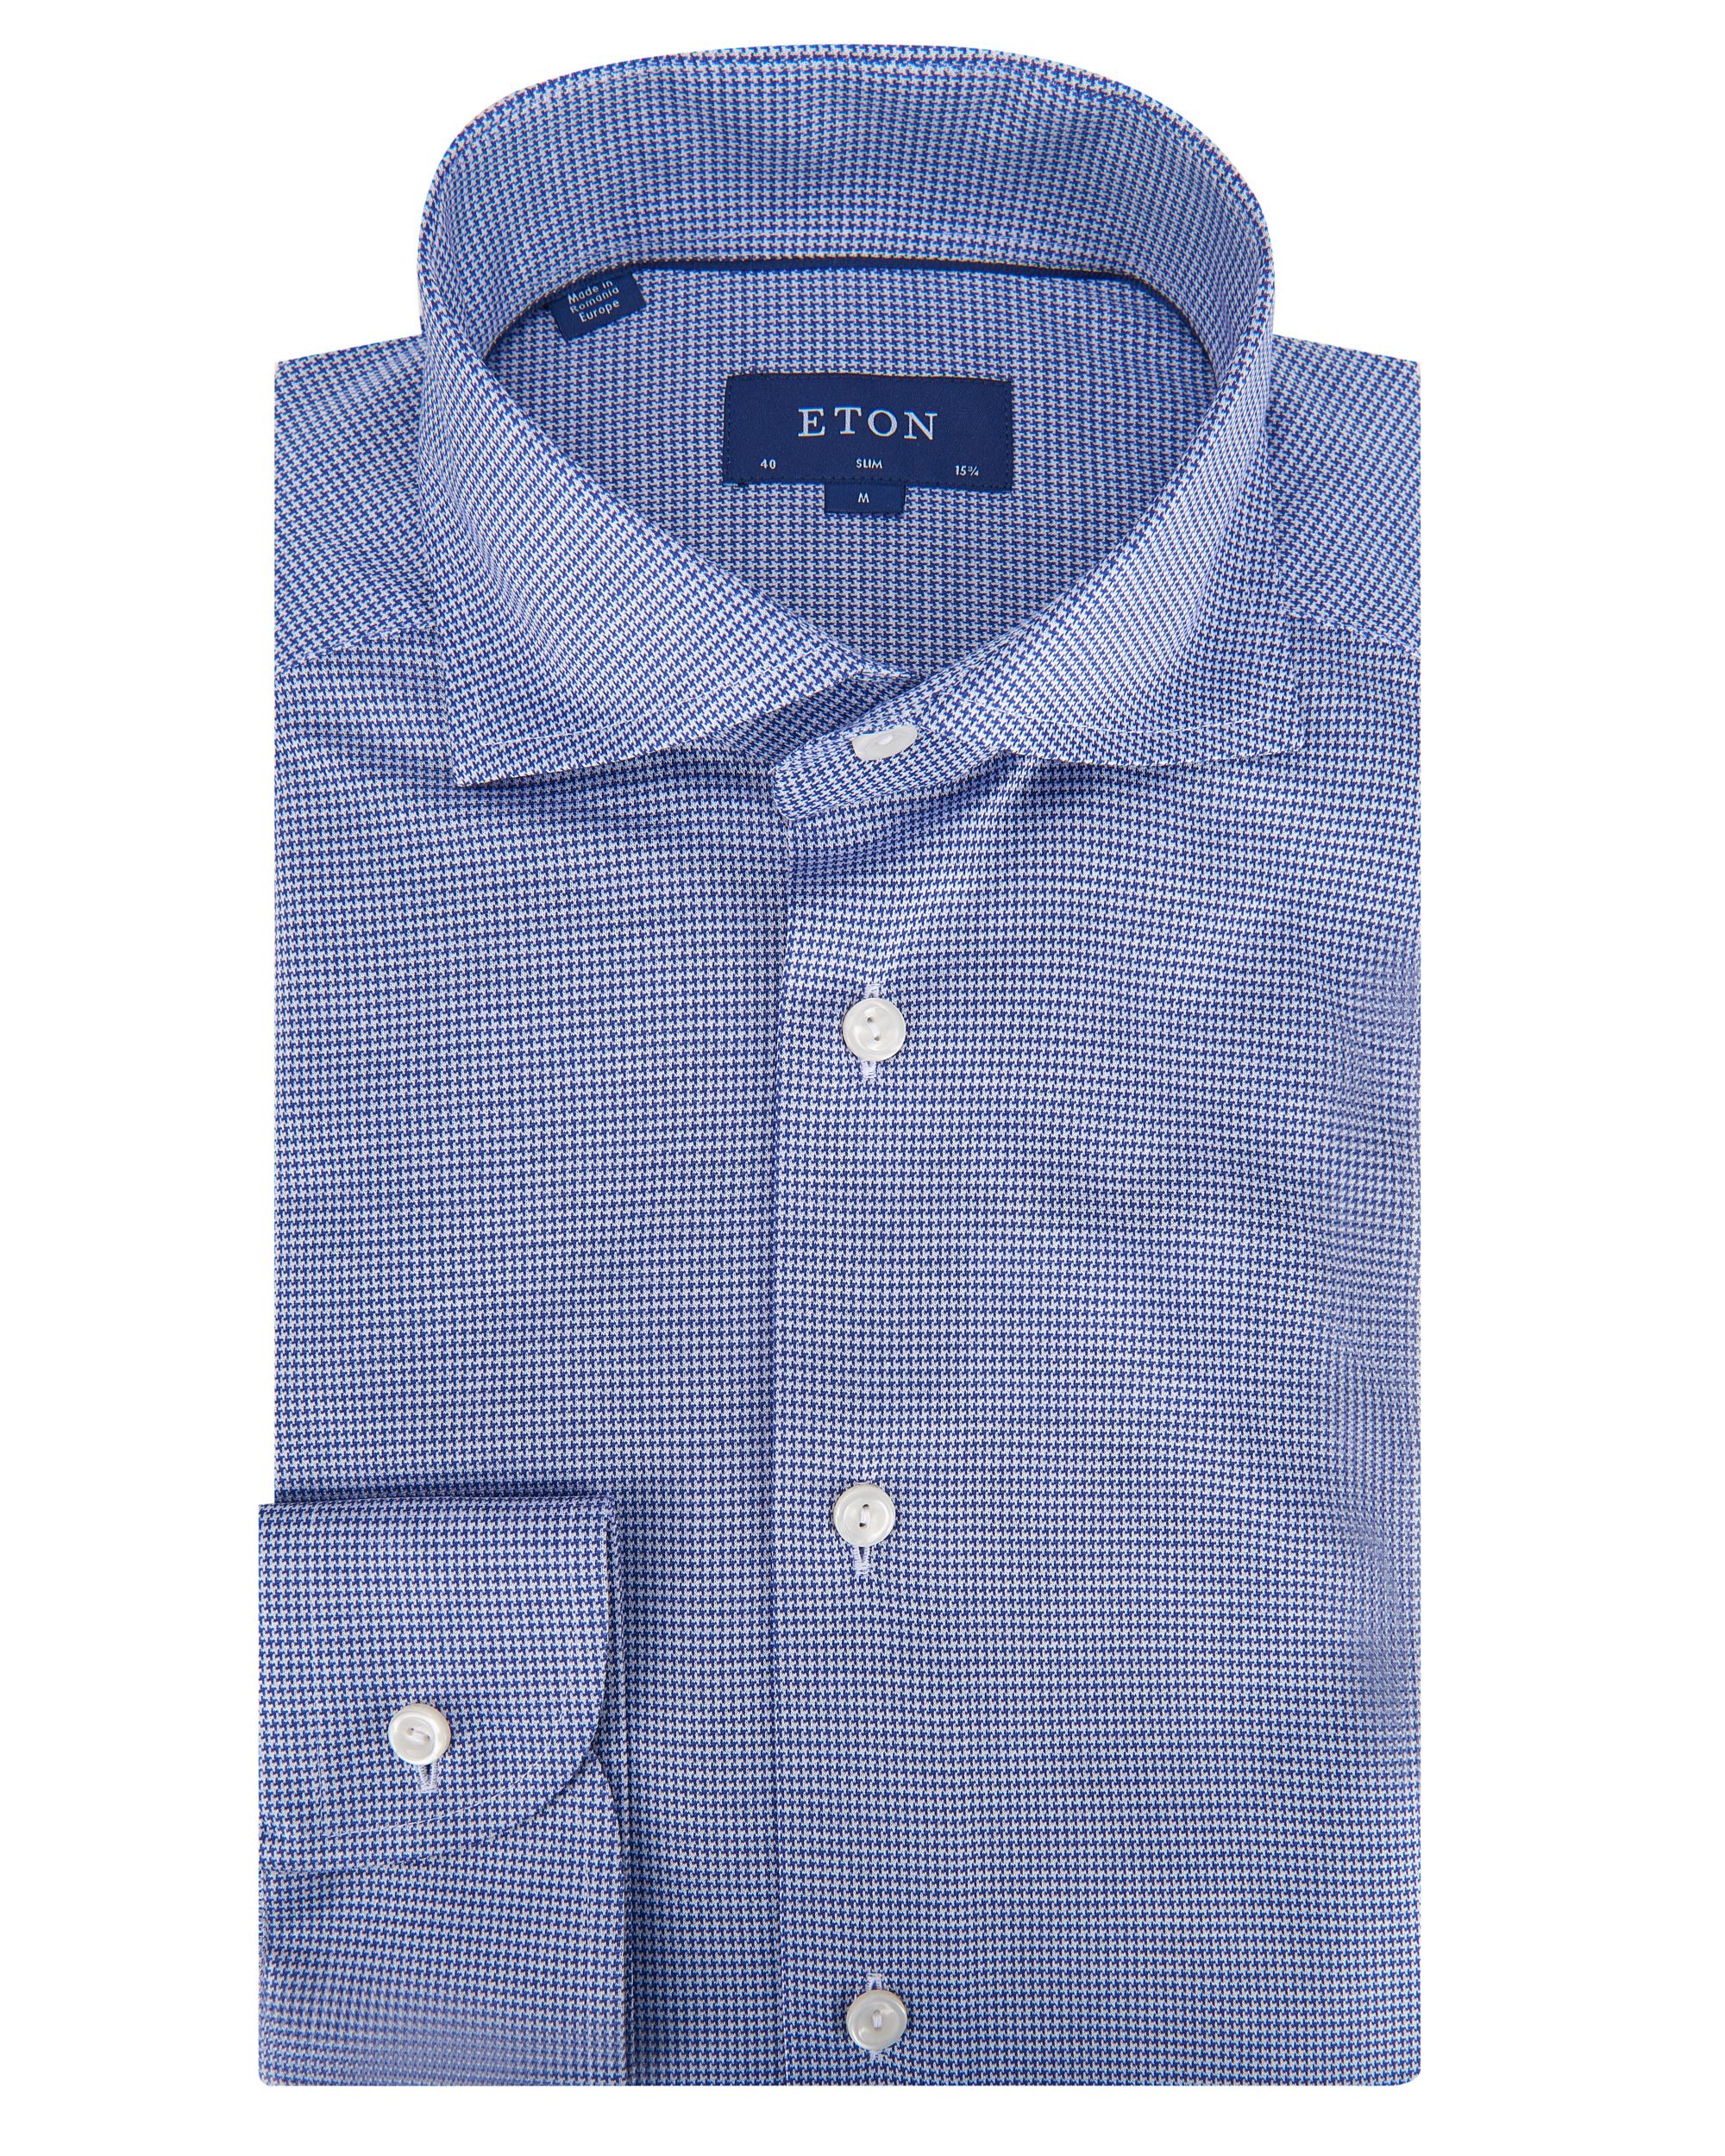 ETON Overhemd LM Blauw 082175-001-37/38